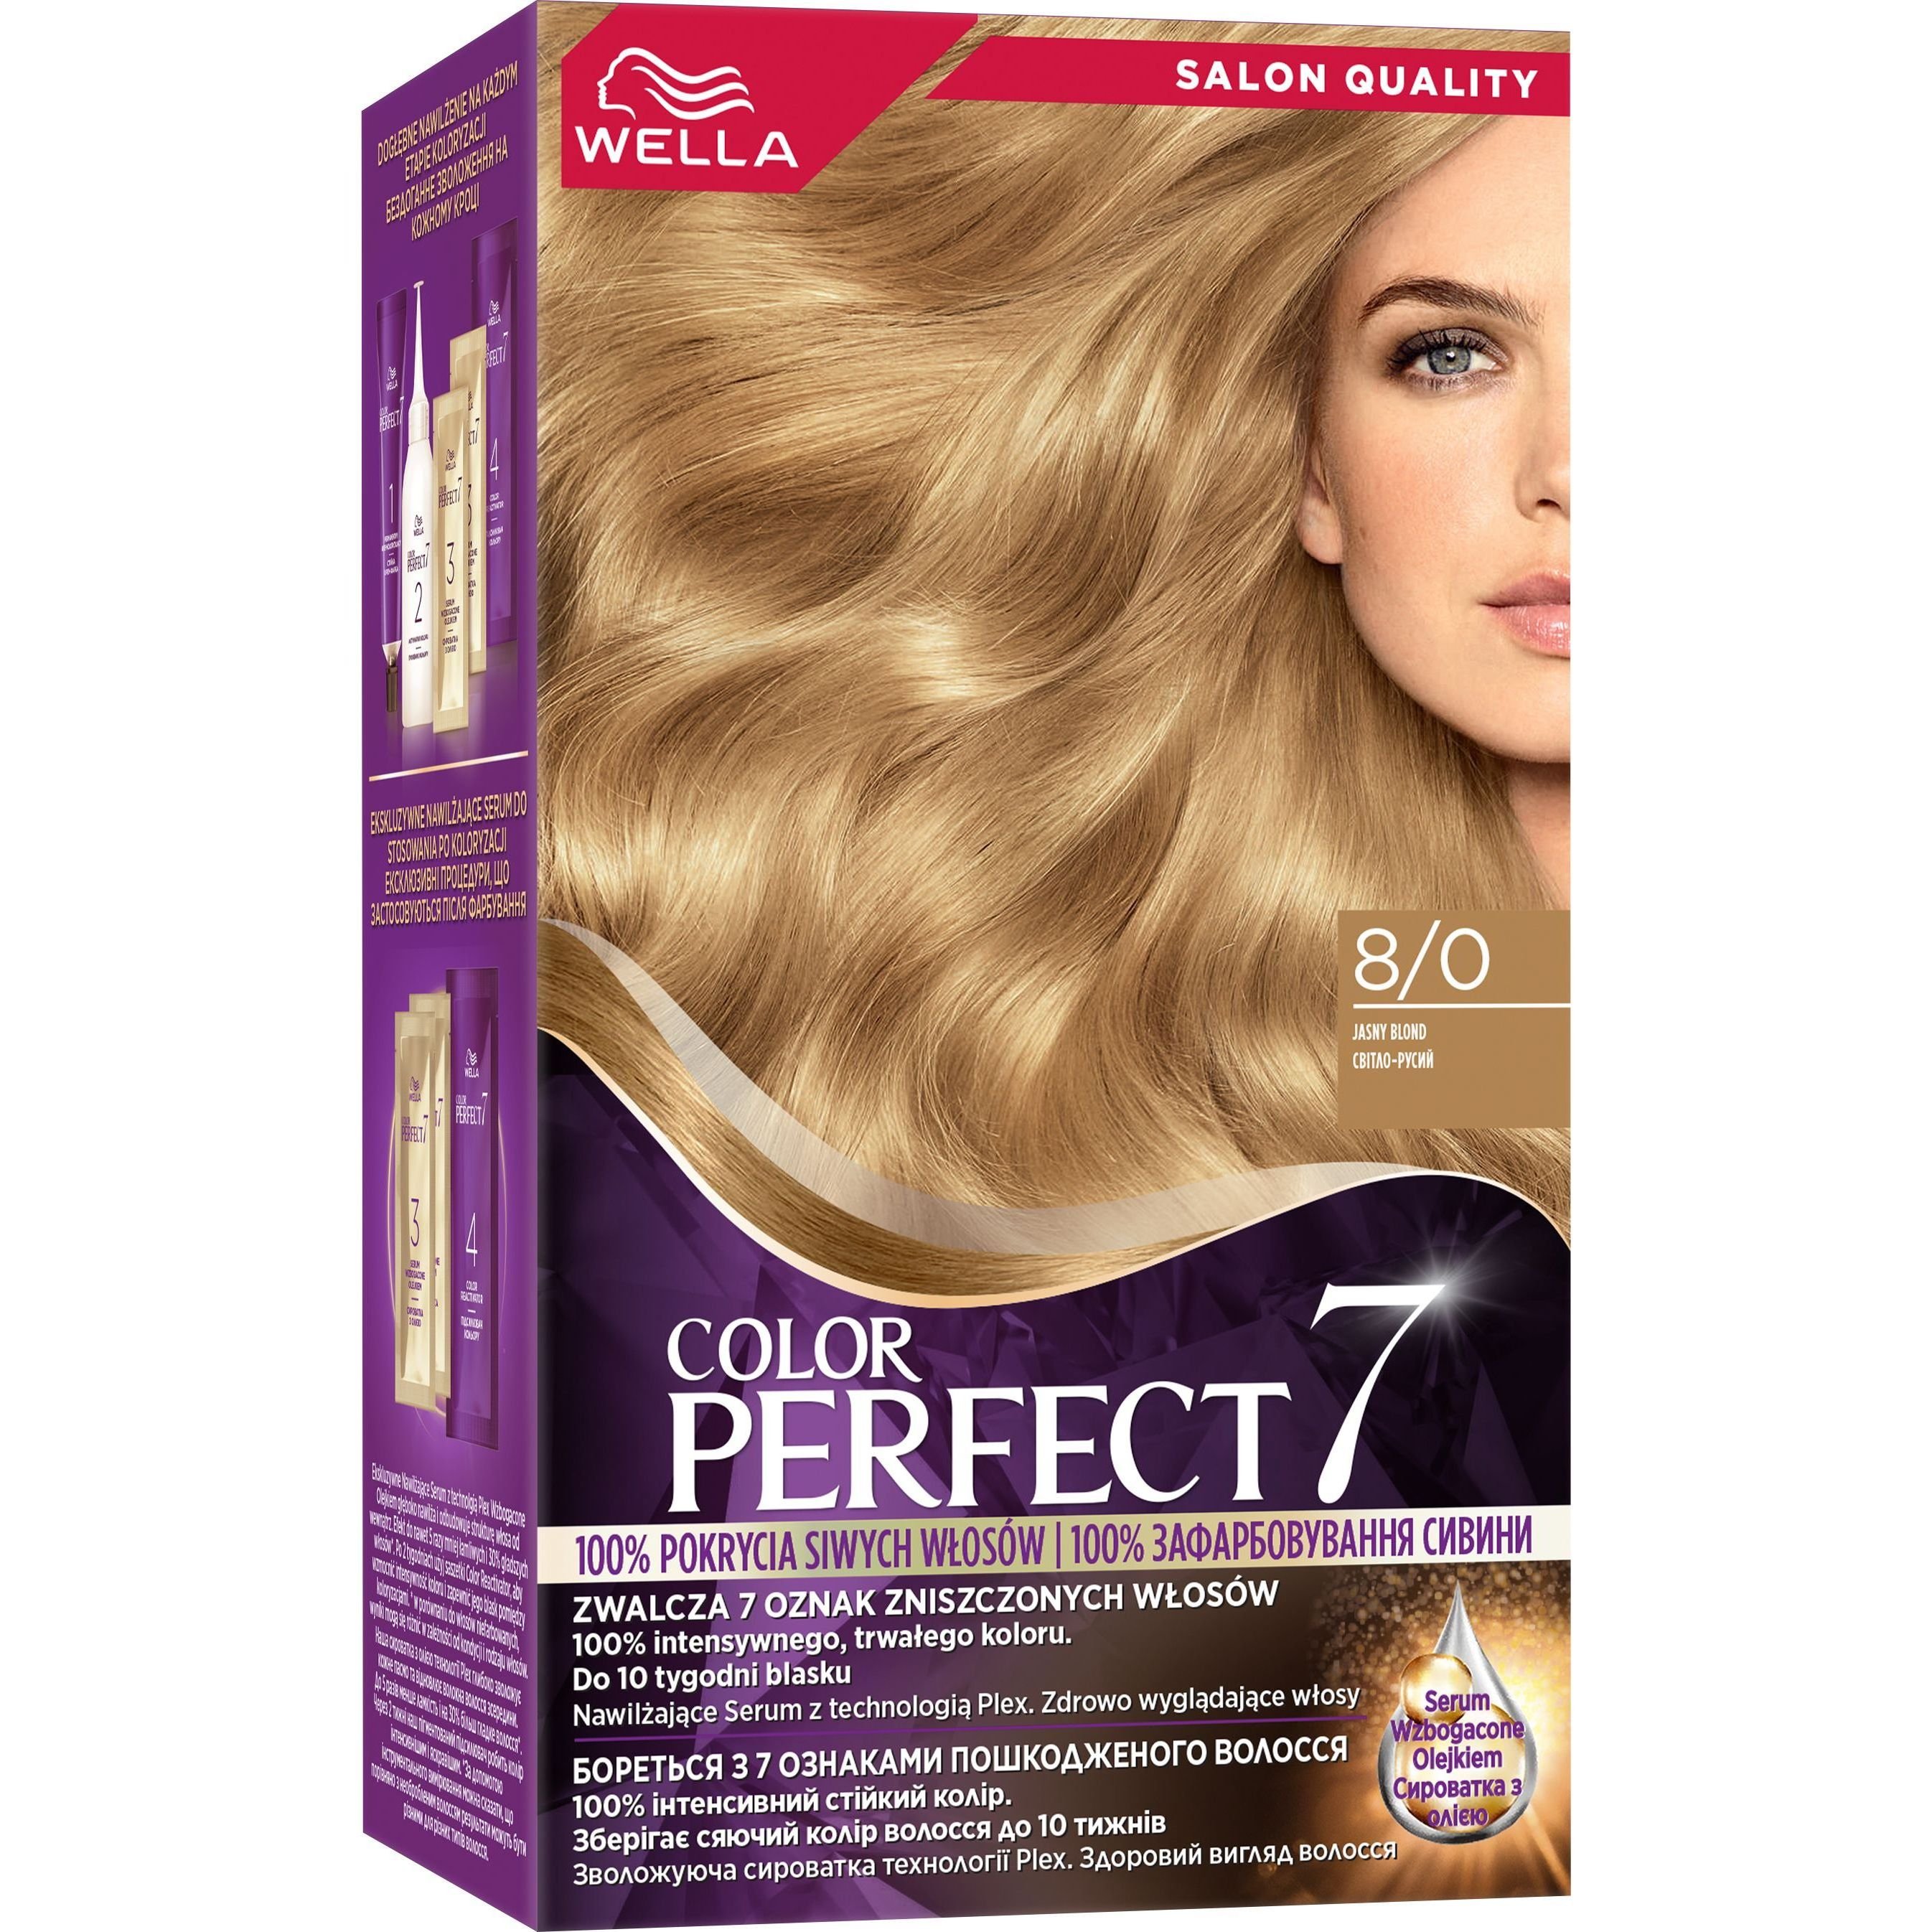 Стійка крем-фарба для волосся Wella Color Perfect 8/0 Світло-русий (4064666598376) - фото 1